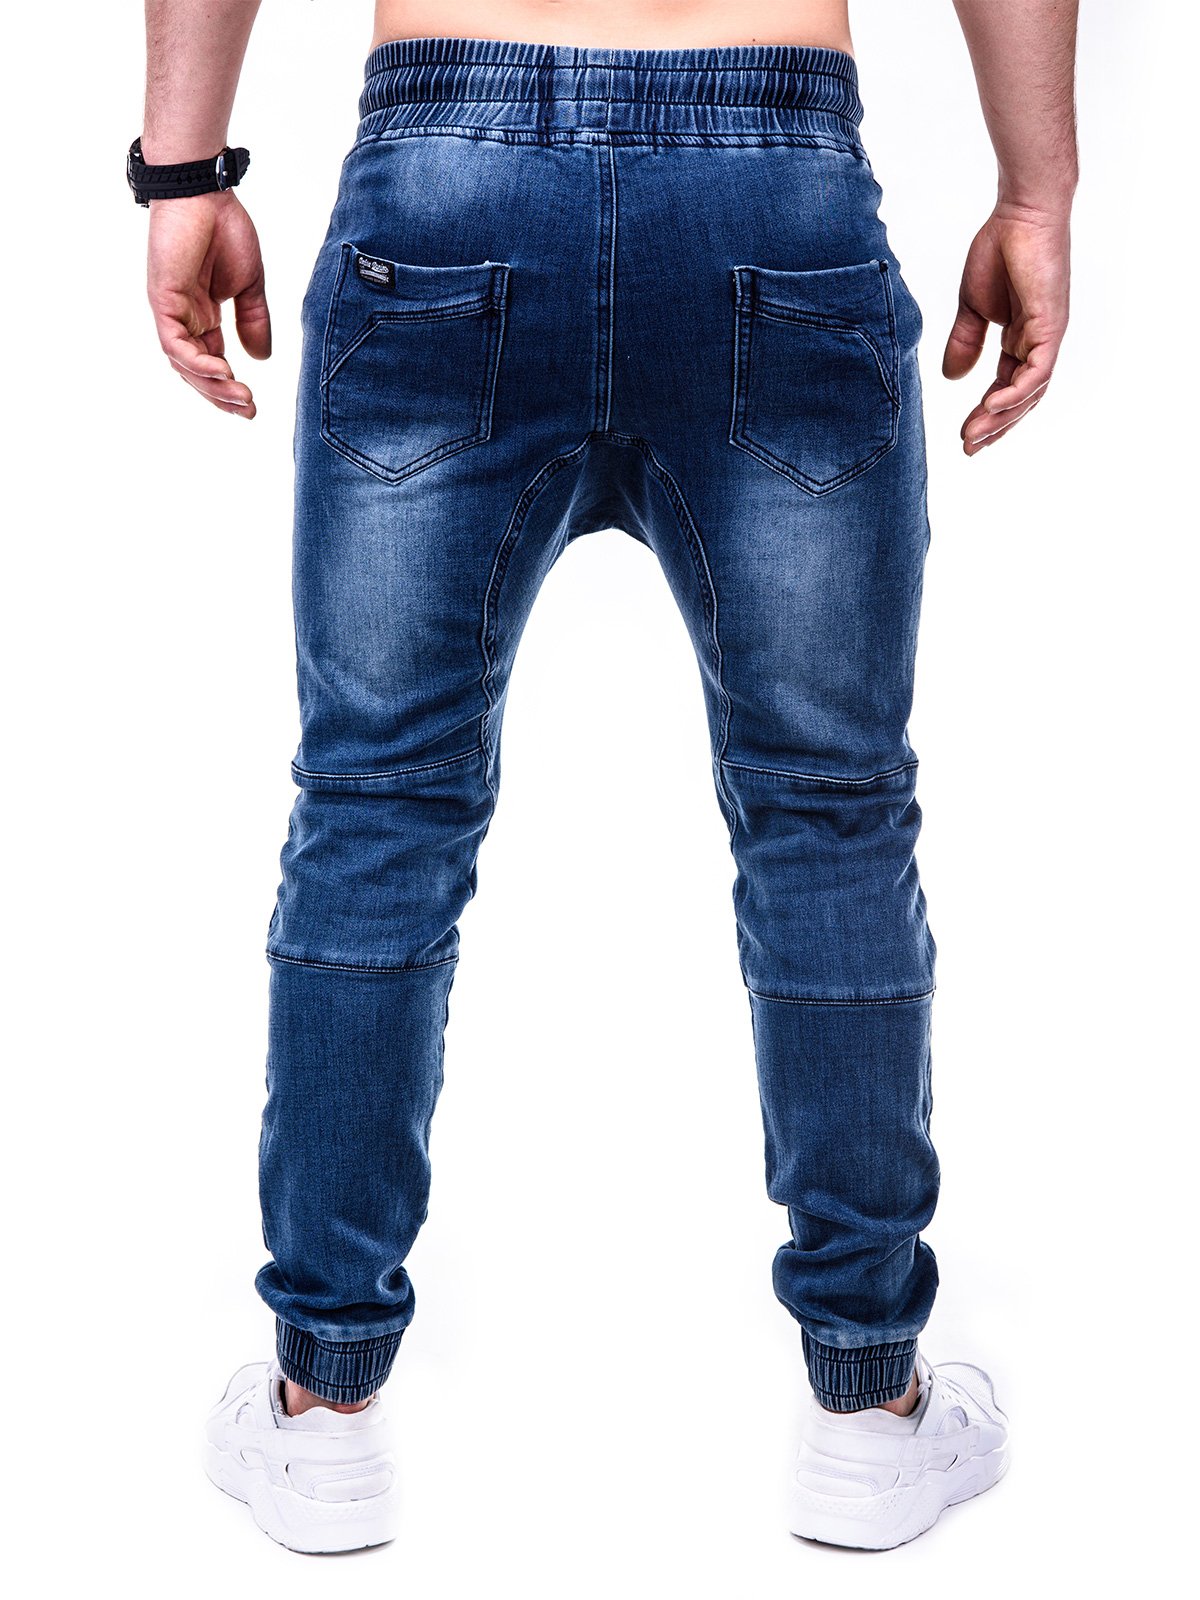 Men's jeans joggers P404 - blue | MODONE wholesale - Clothing For Men